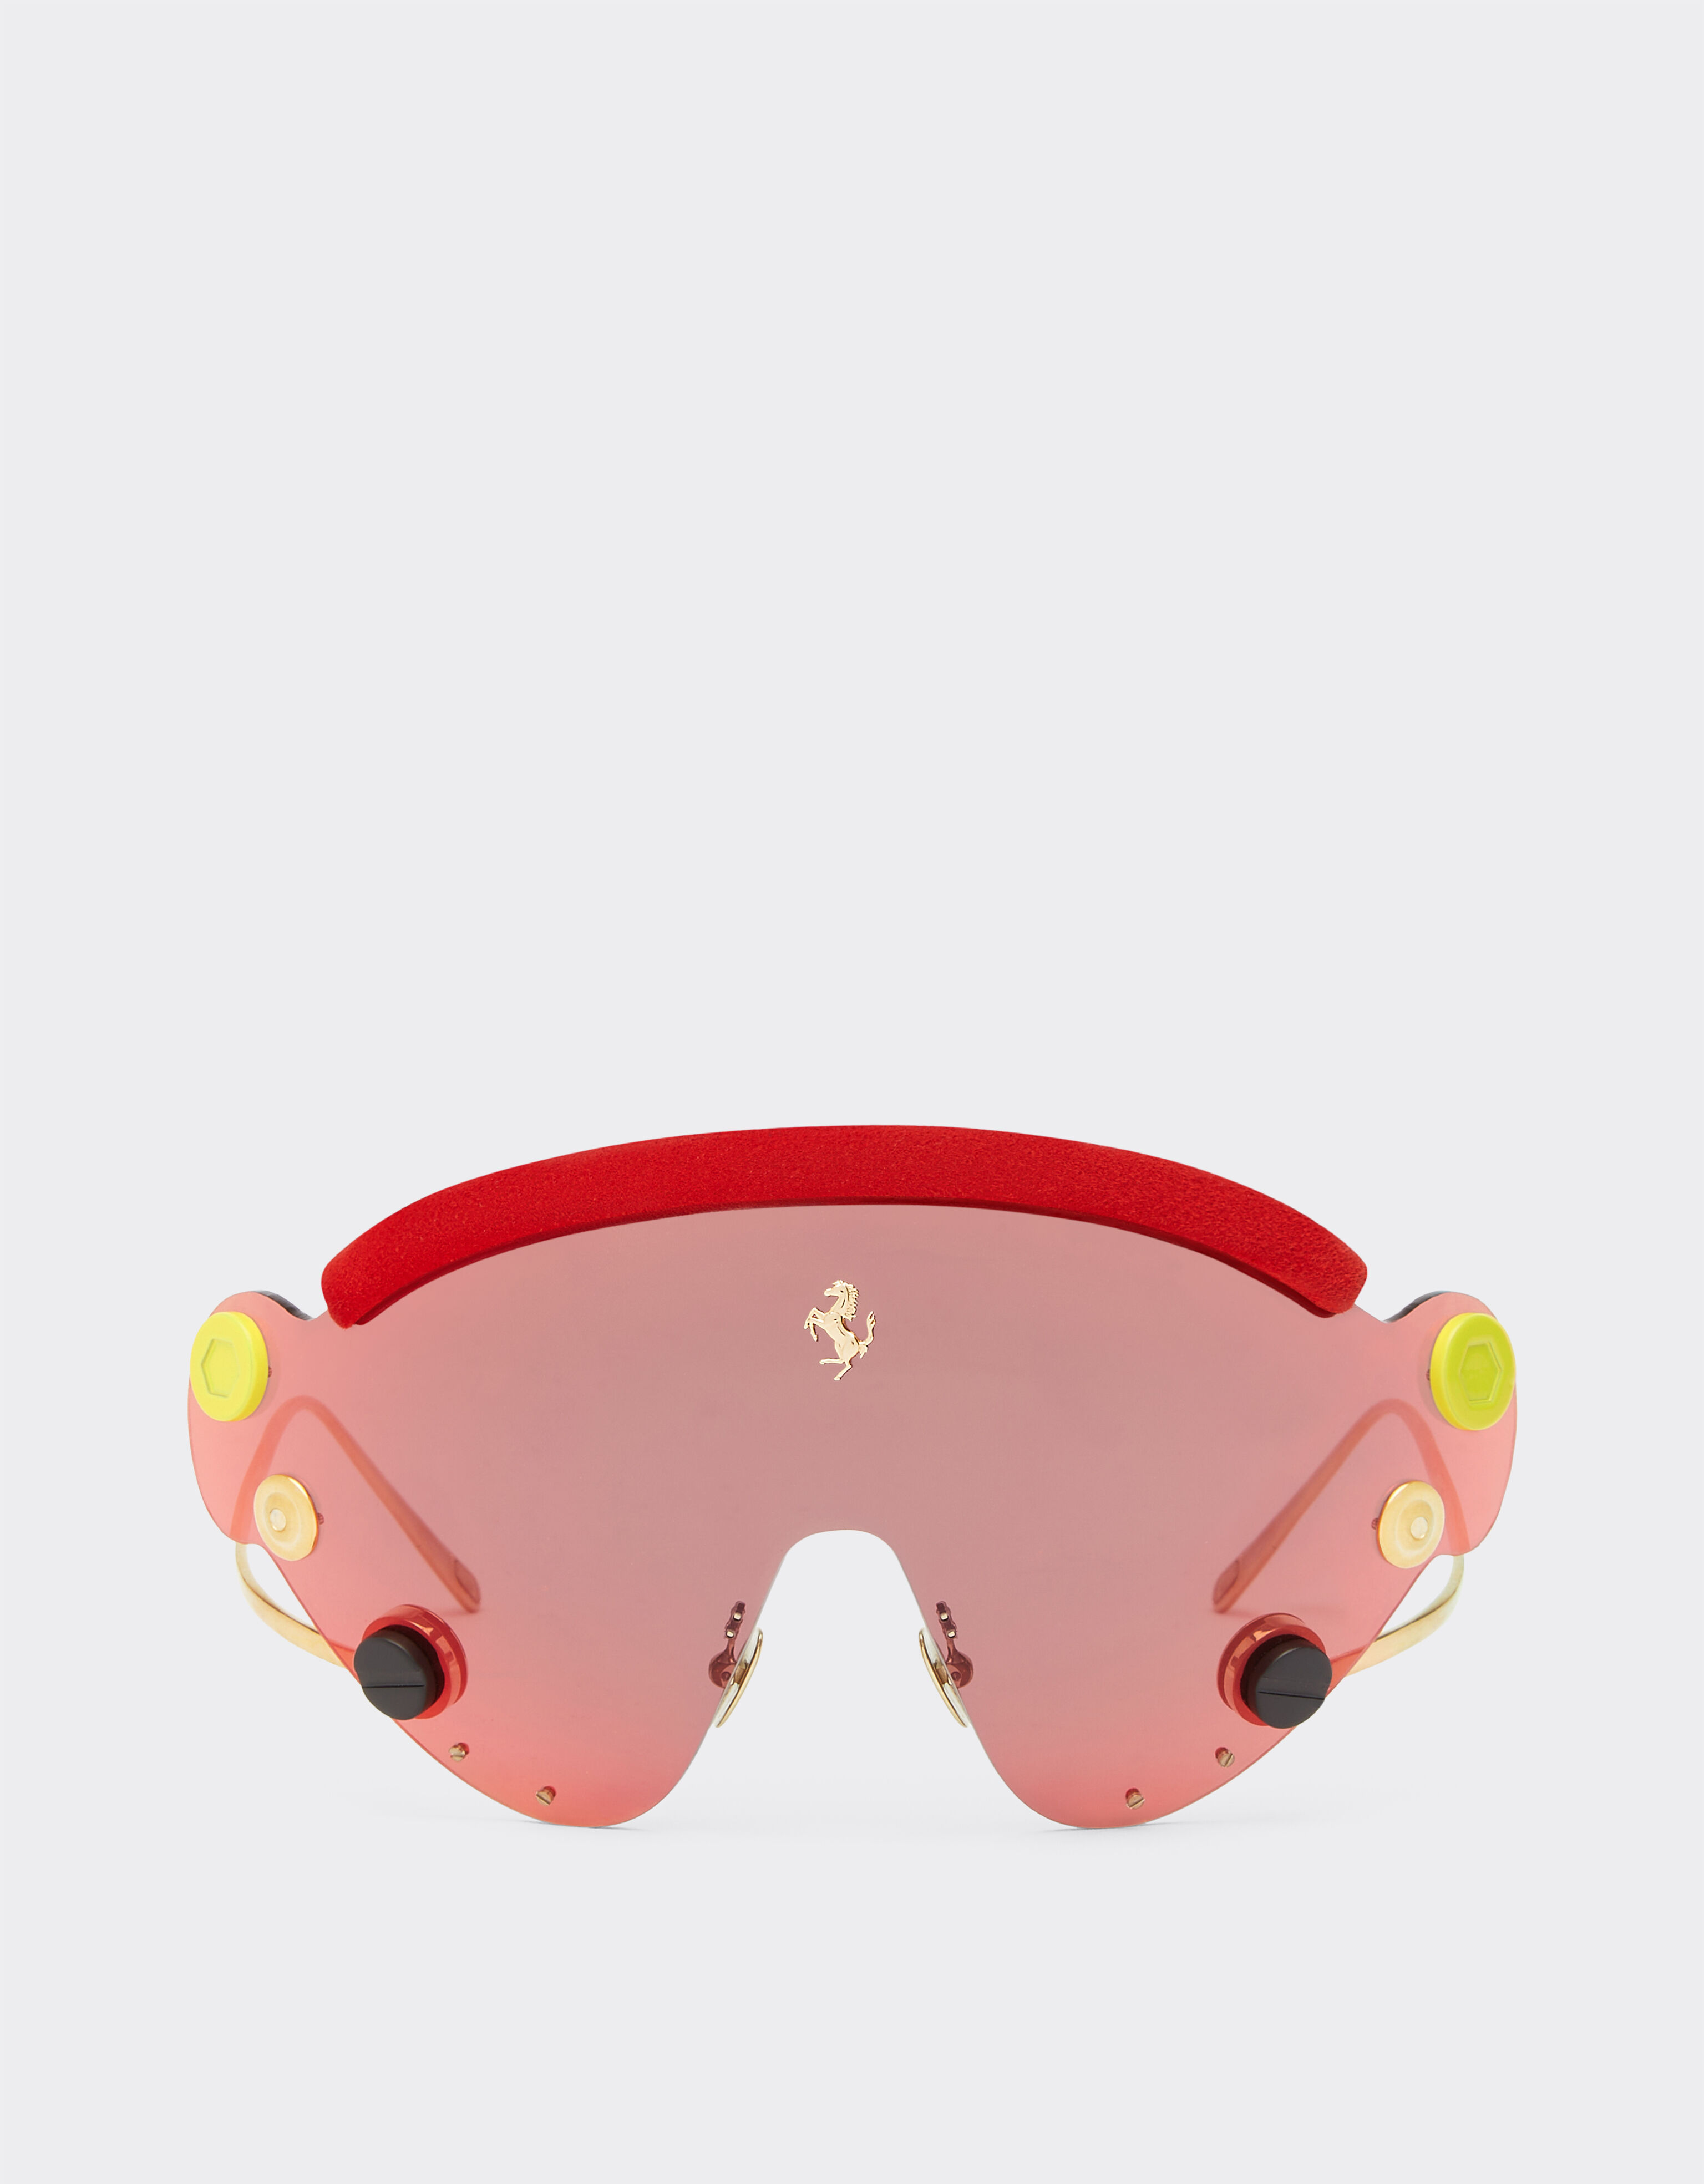 Ferrari Lunettes de soleil masque Limited Edition Ferrari en métal rouge et or avec masque rouge effet miroir Or F0411f